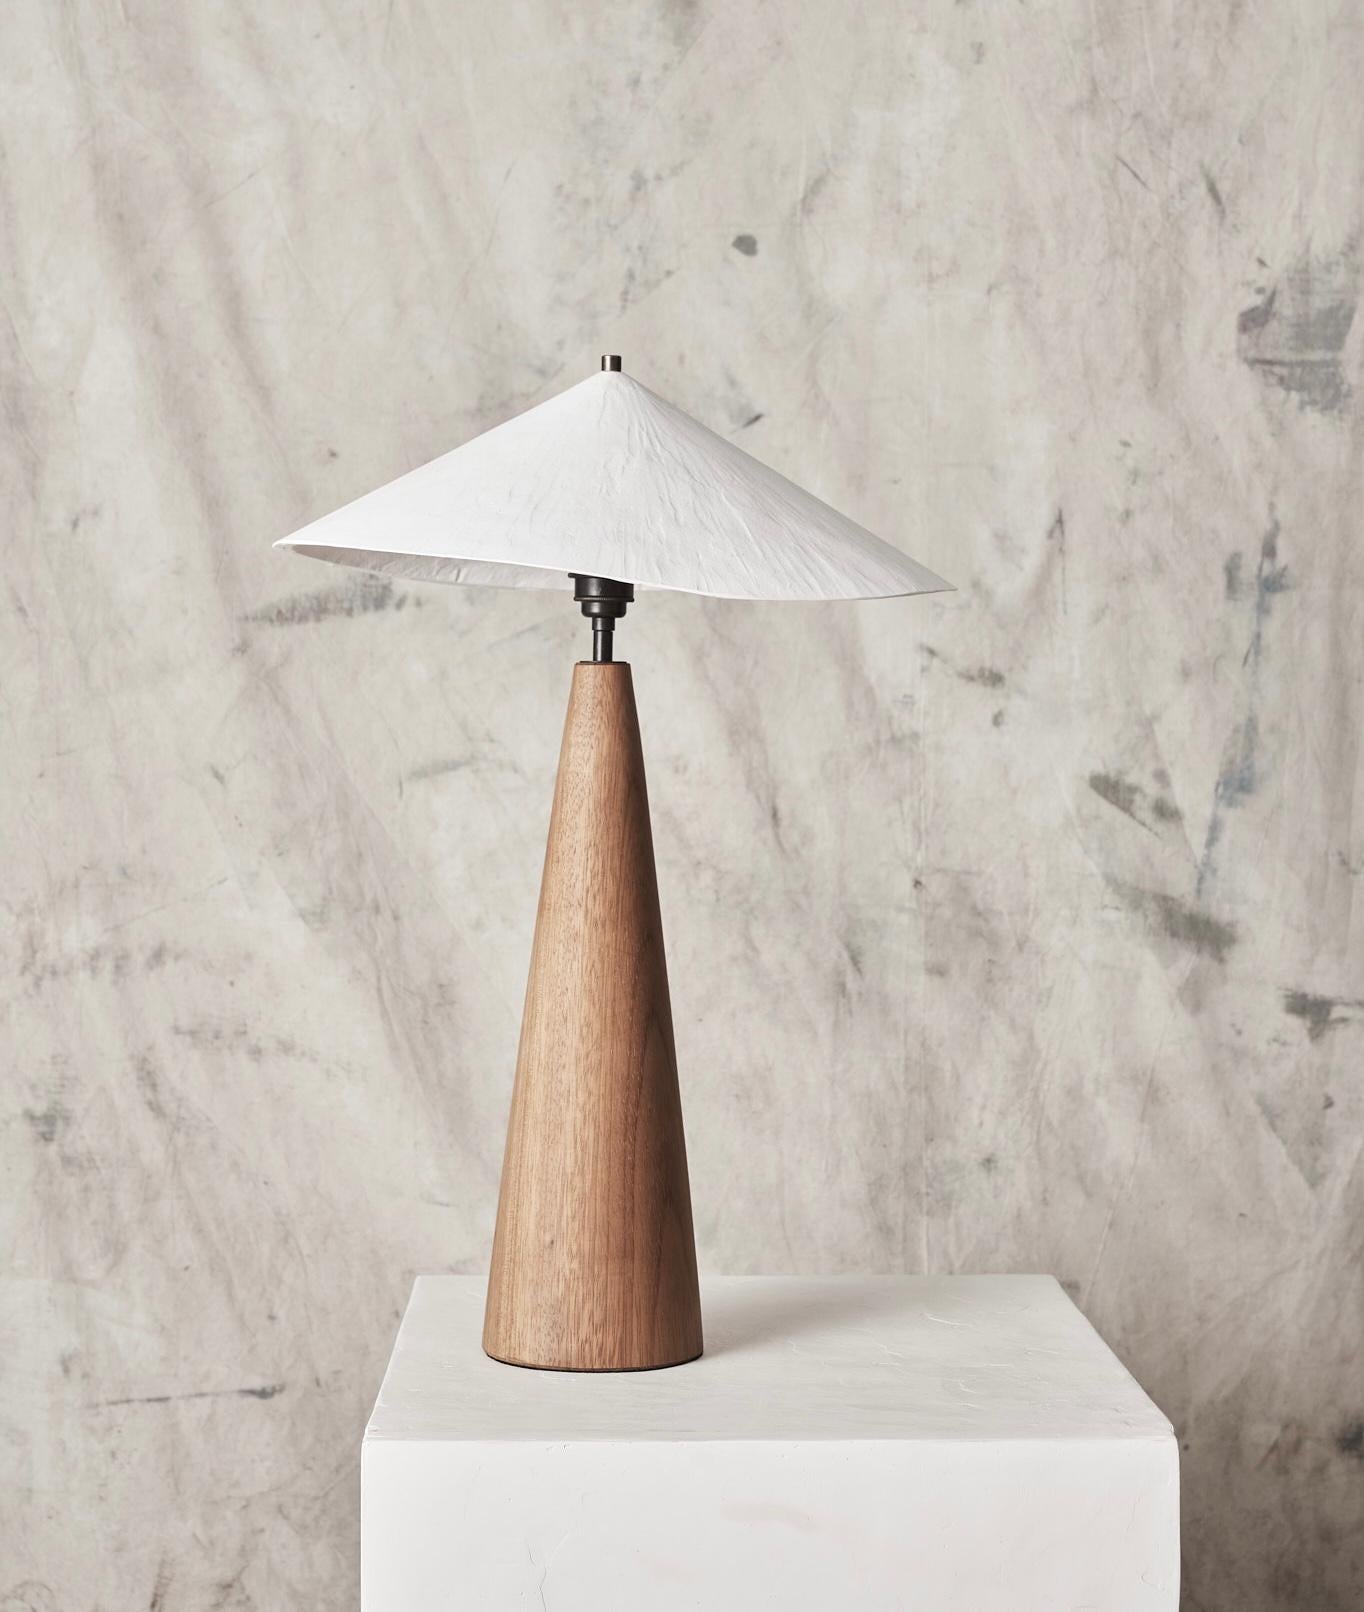 La lampe de table Wobble projette une lumière chaude vers le bas, créant une lueur d'ambiance dans n'importe quelle pièce. 
Incorporant notre abat-jour original en plâtre réduit, associé à une magnifique base en bois d'iroko tournée à la main, la